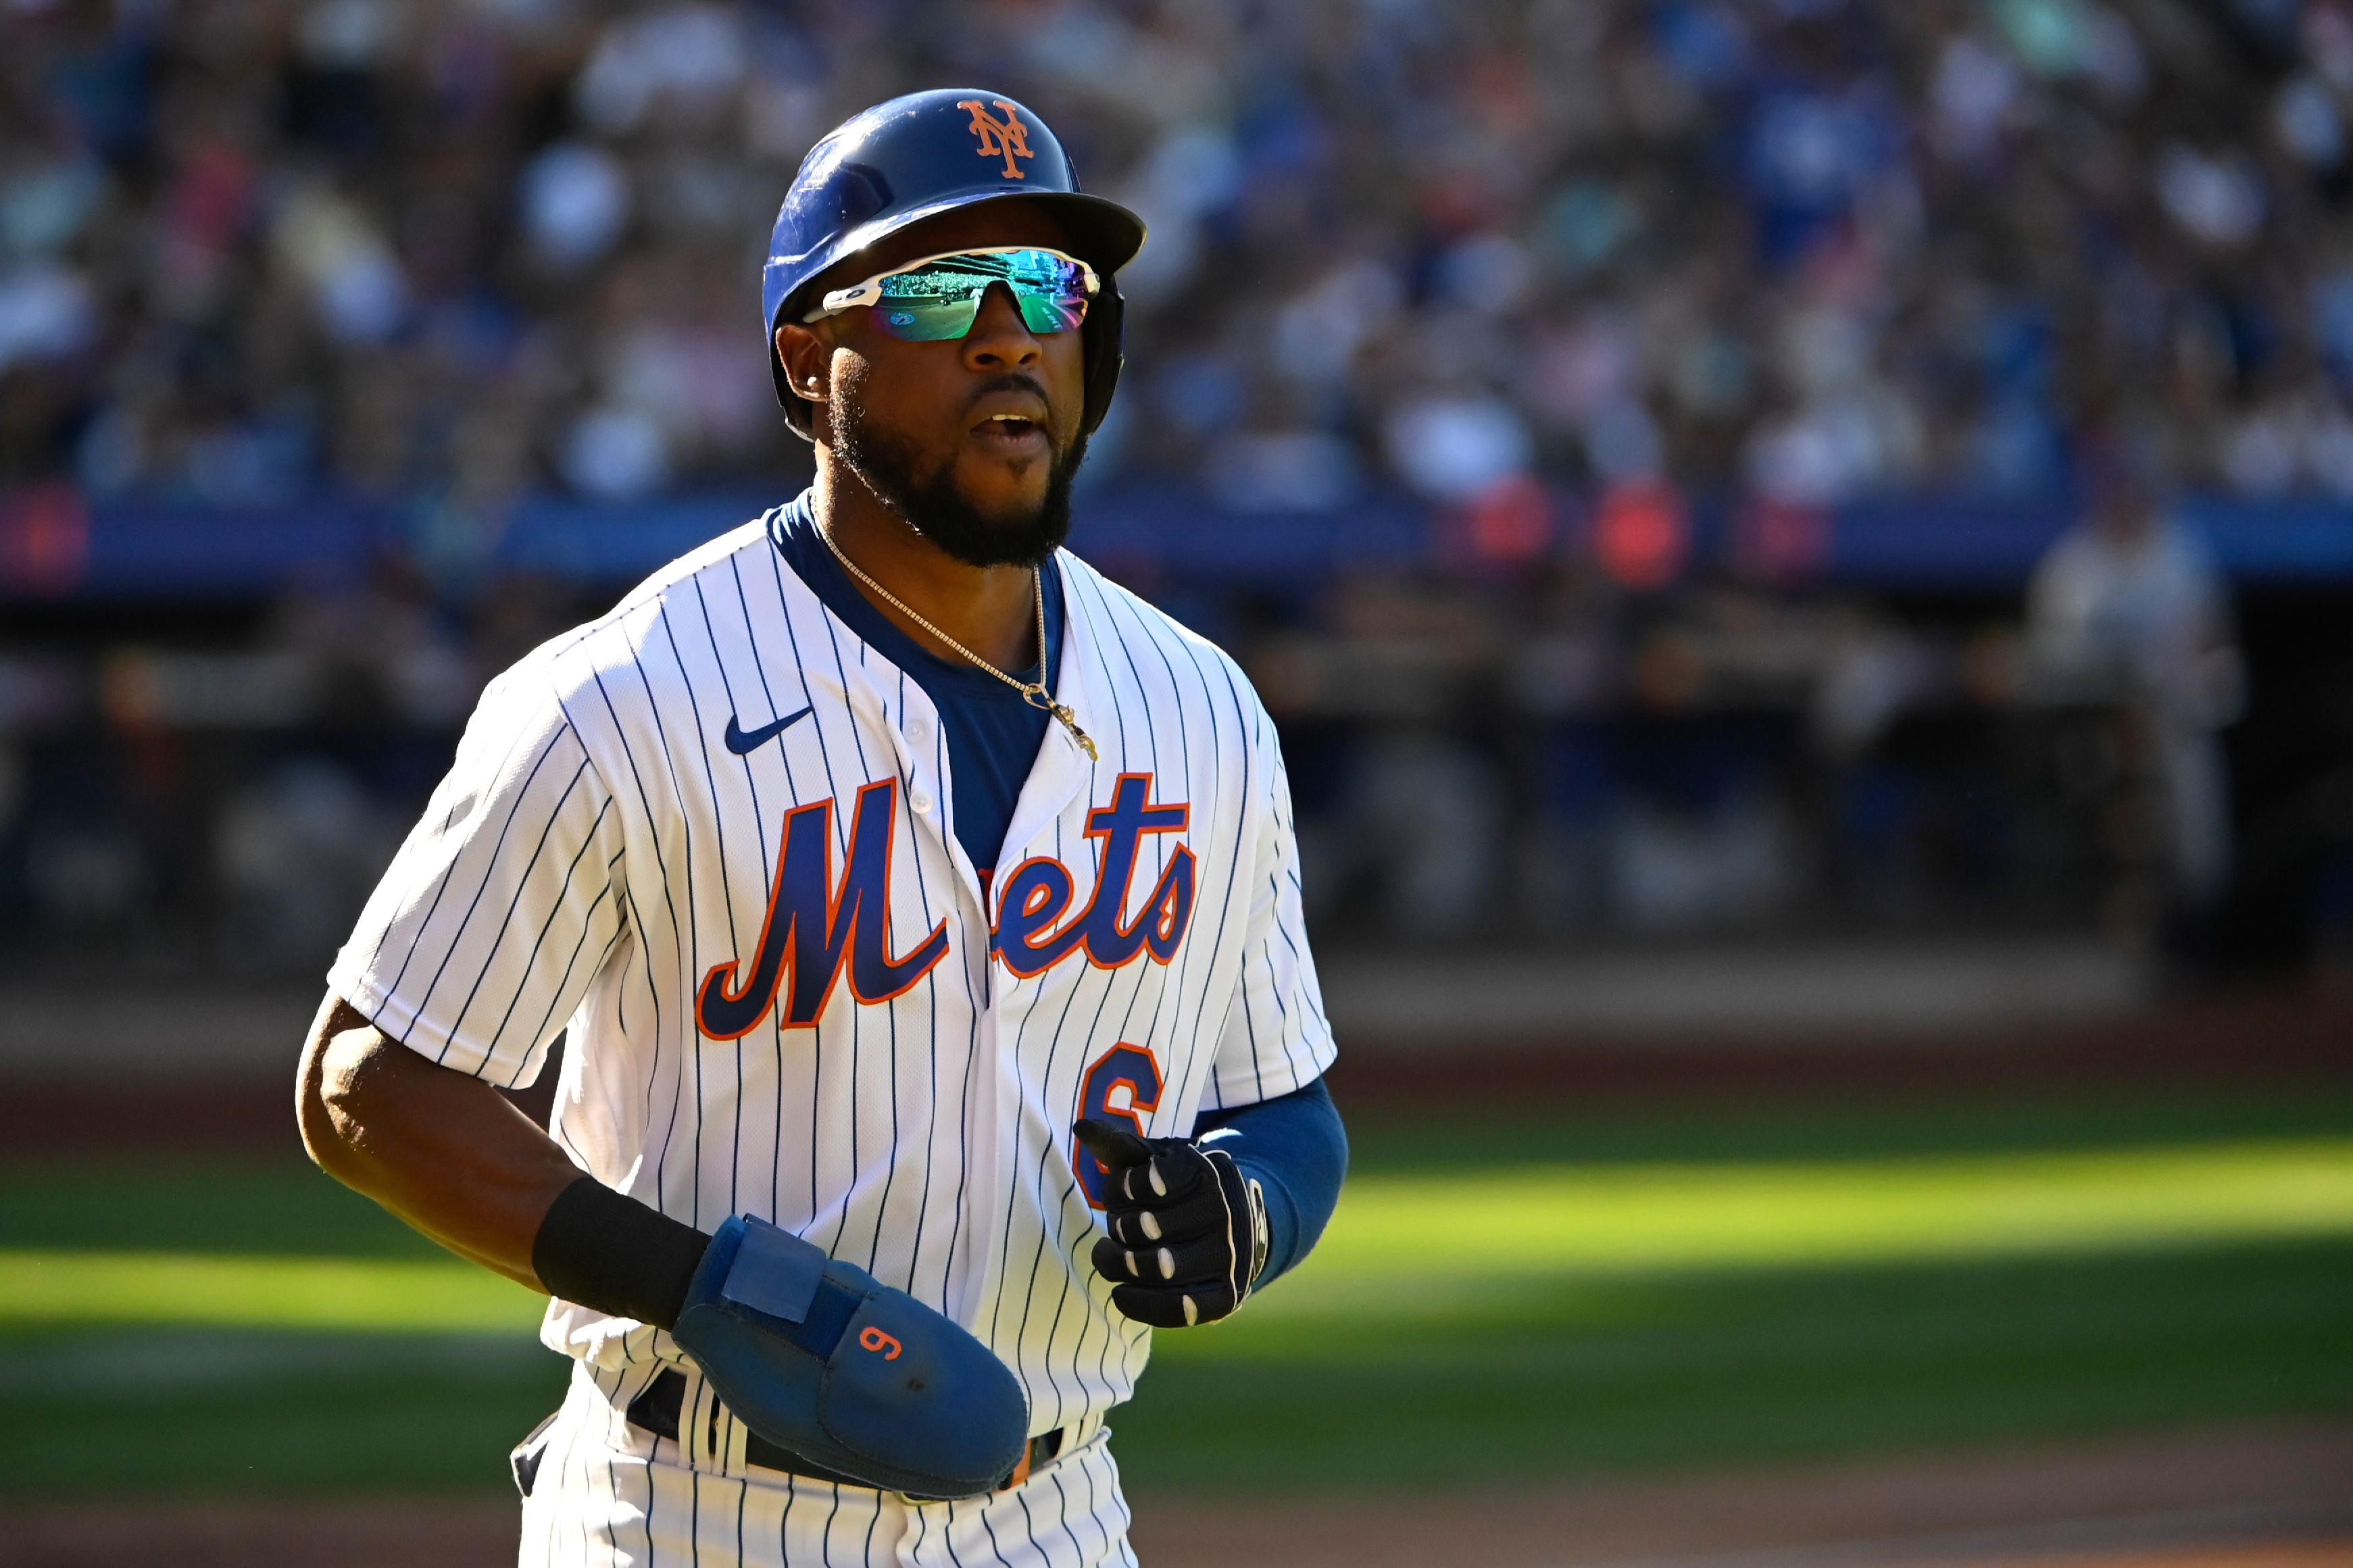 Starling Marte - New York Mets Right Fielder - ESPN